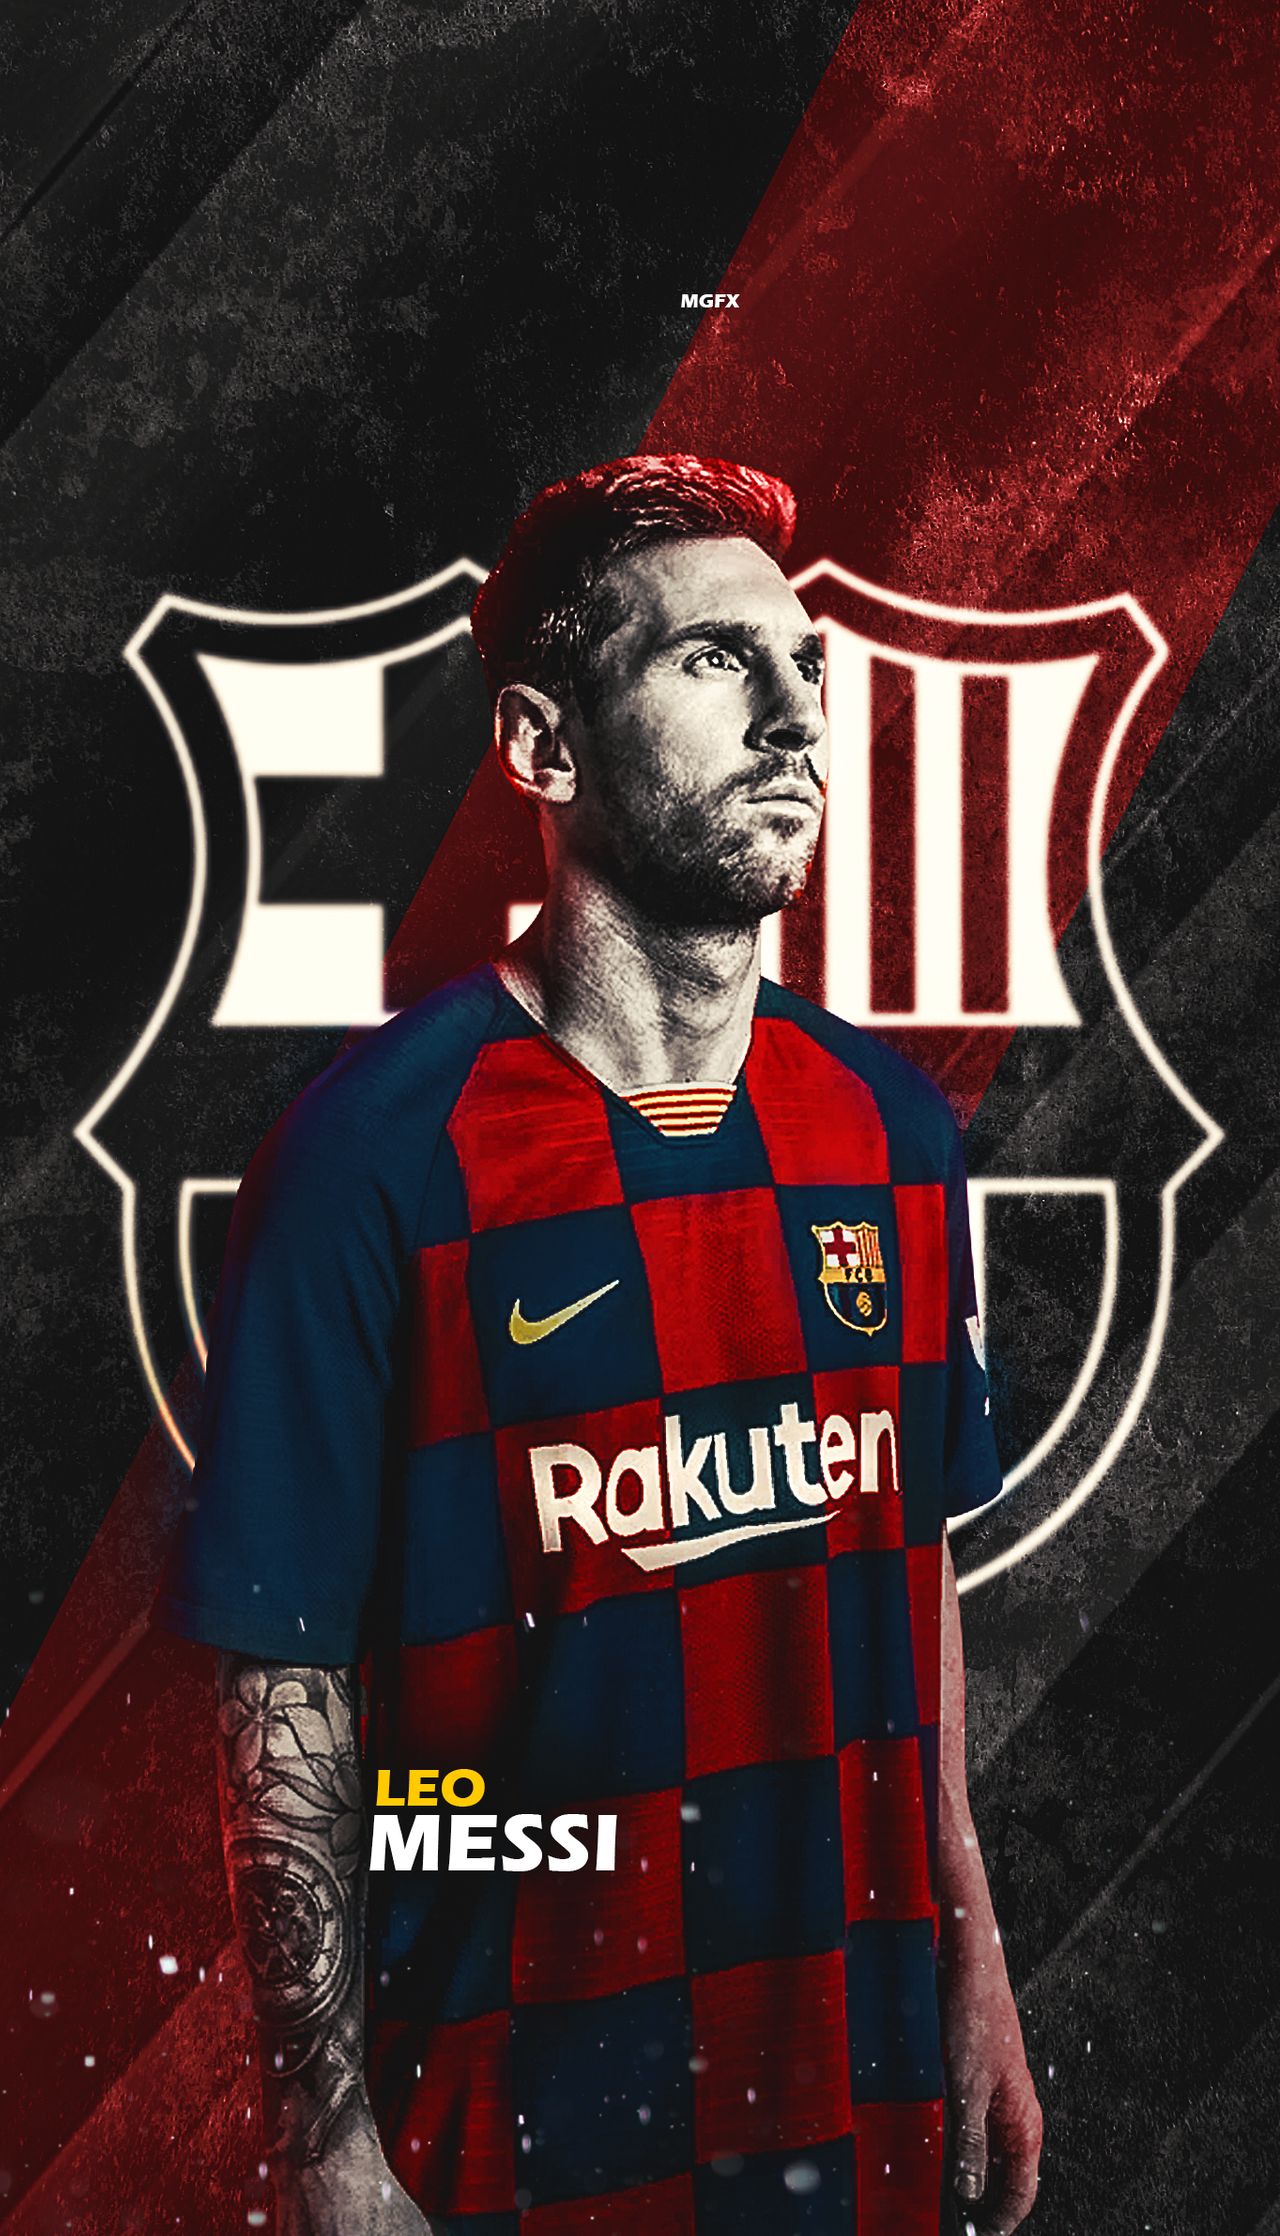 Messi Wallpaper Hd Wallpaper 4k Fc Barcelona Lionel Messi Wallpaper